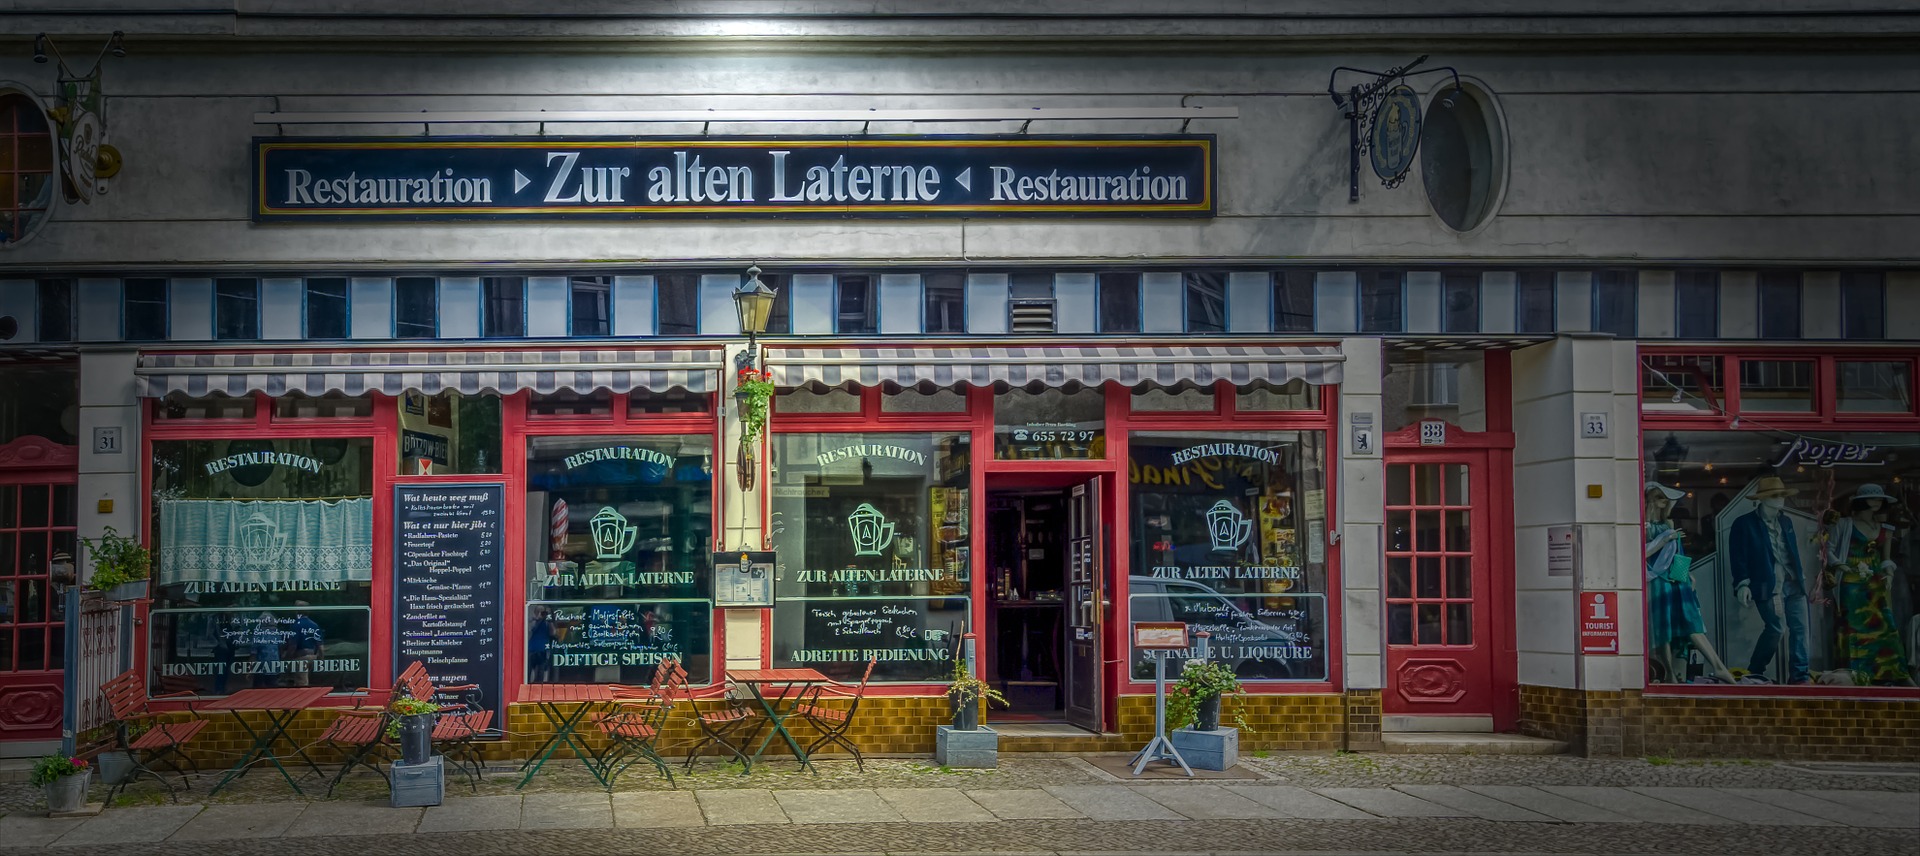 Niemcy: Do 30 listopada zamknięte zostaną restauracje, kawiarnie i bary